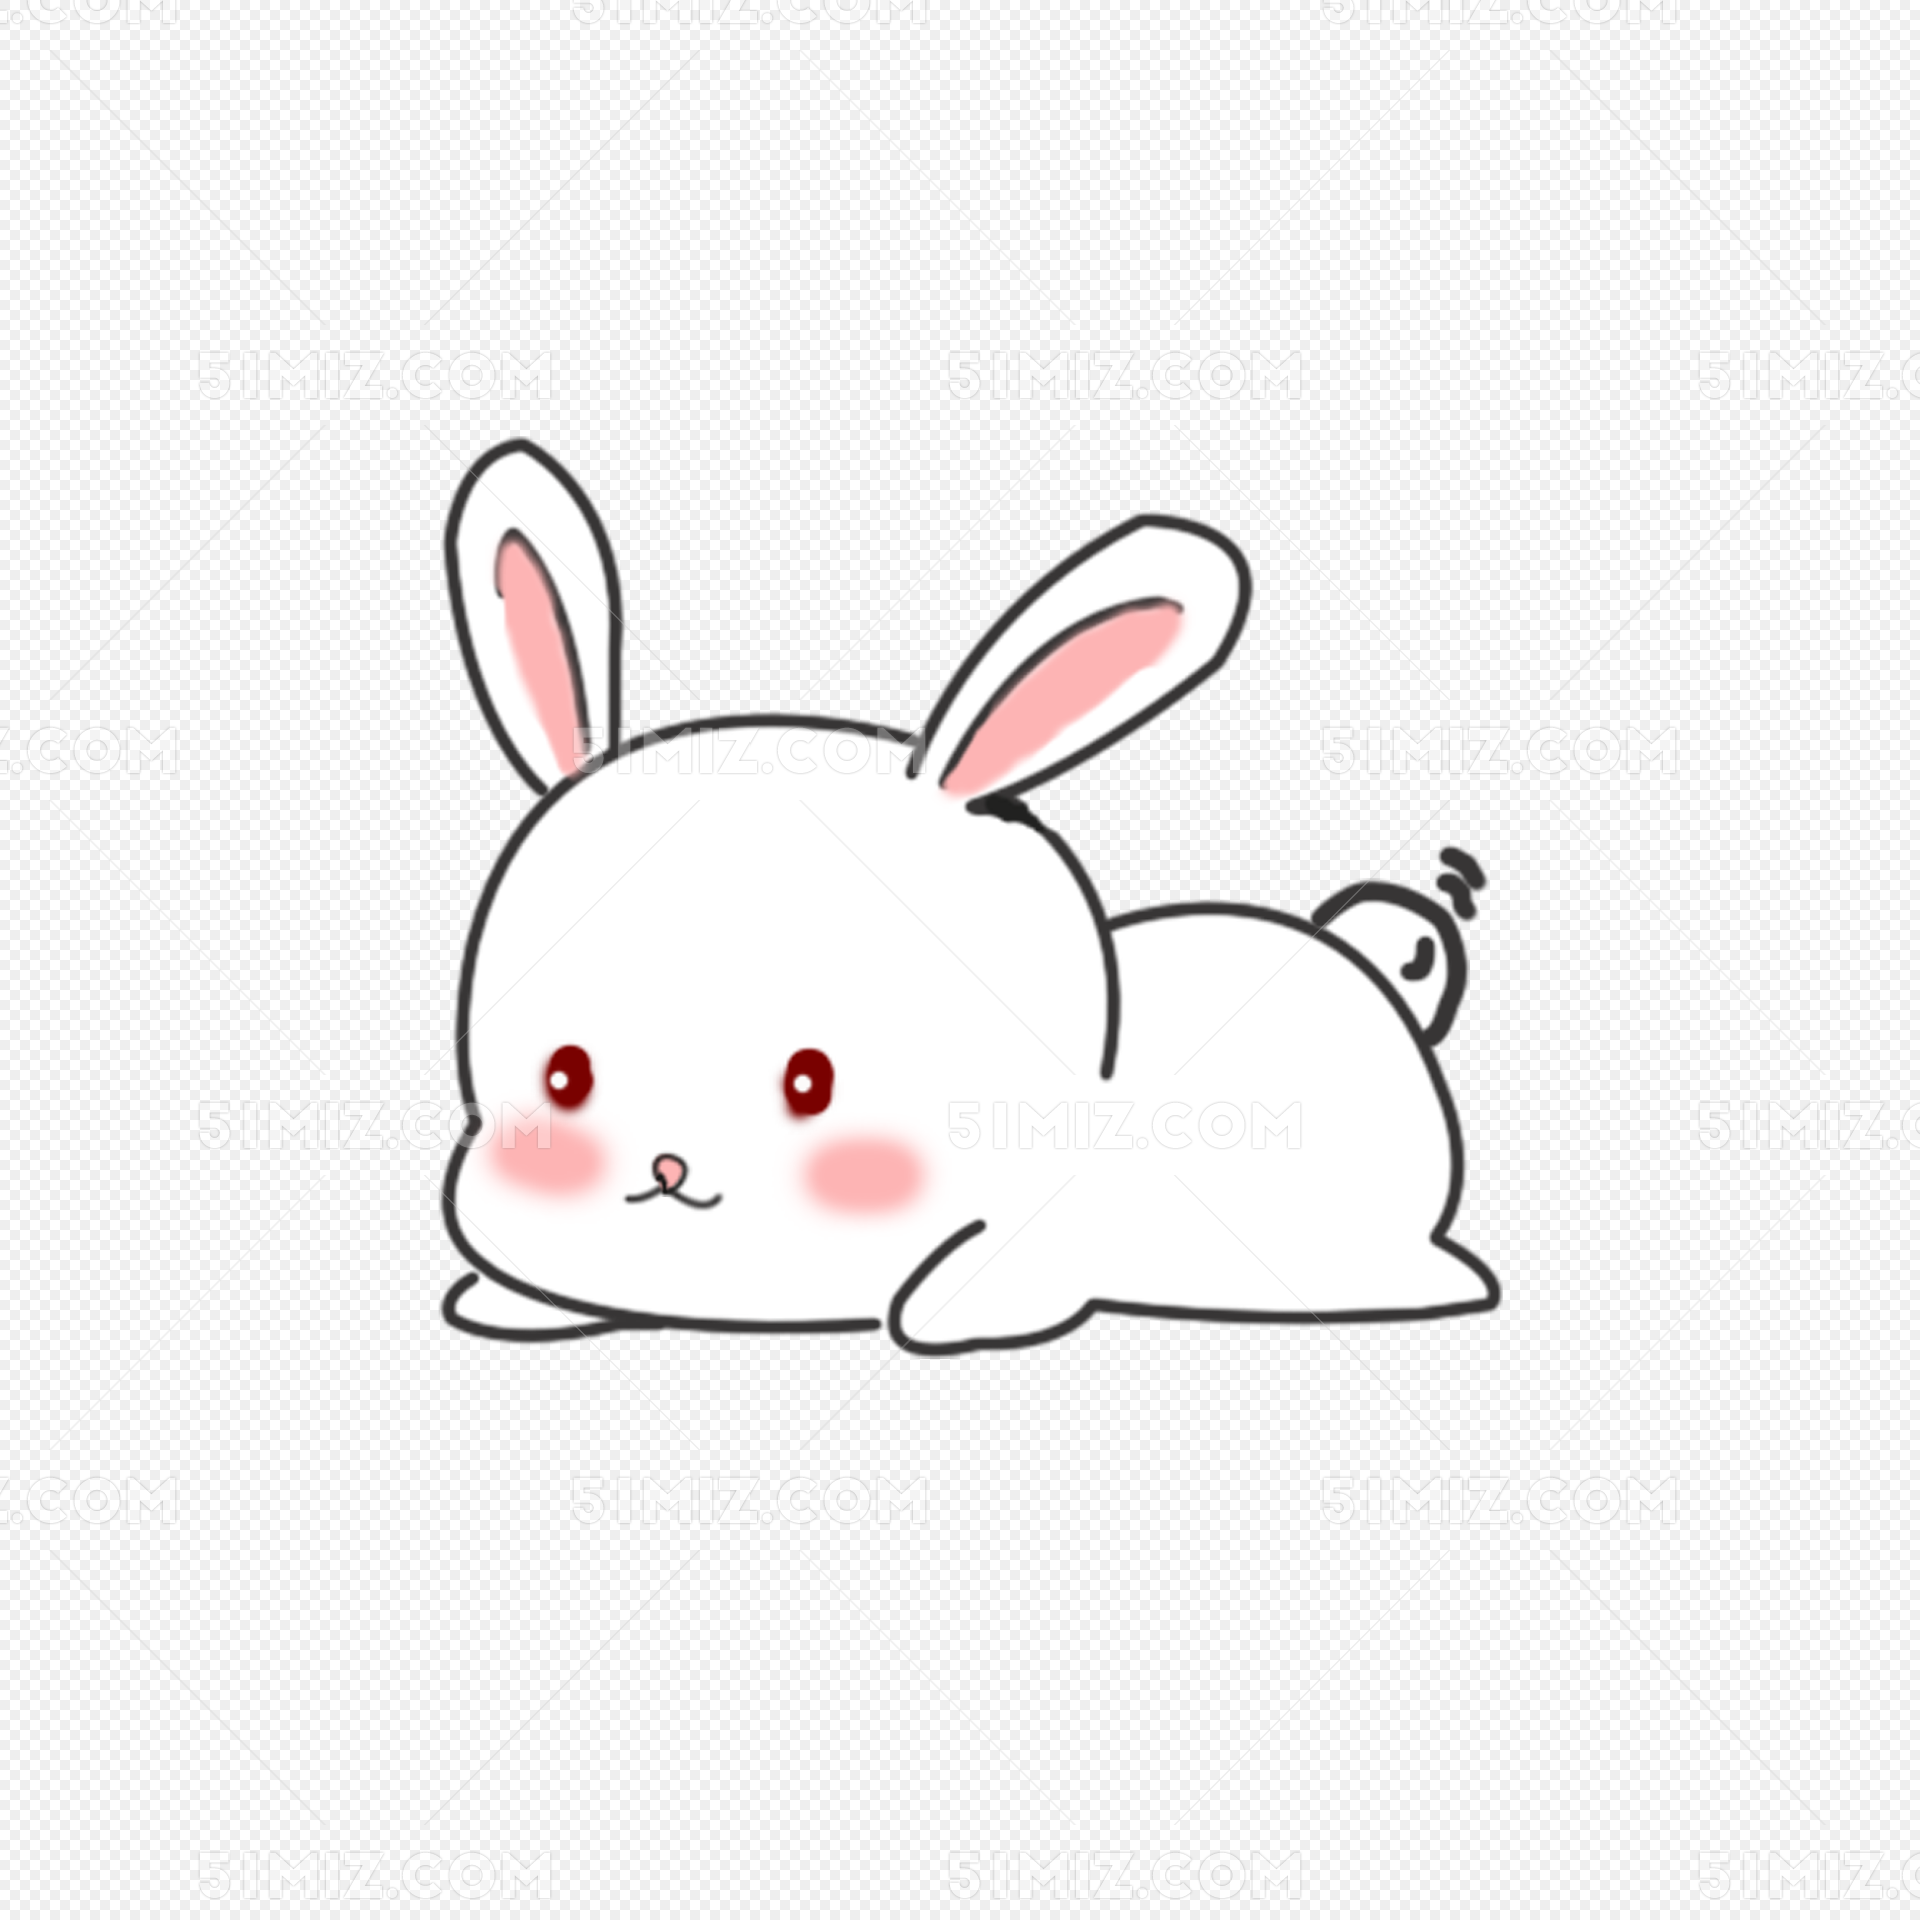 卡通动物兔子_可爱卡通_动漫卡通_图行天下图库